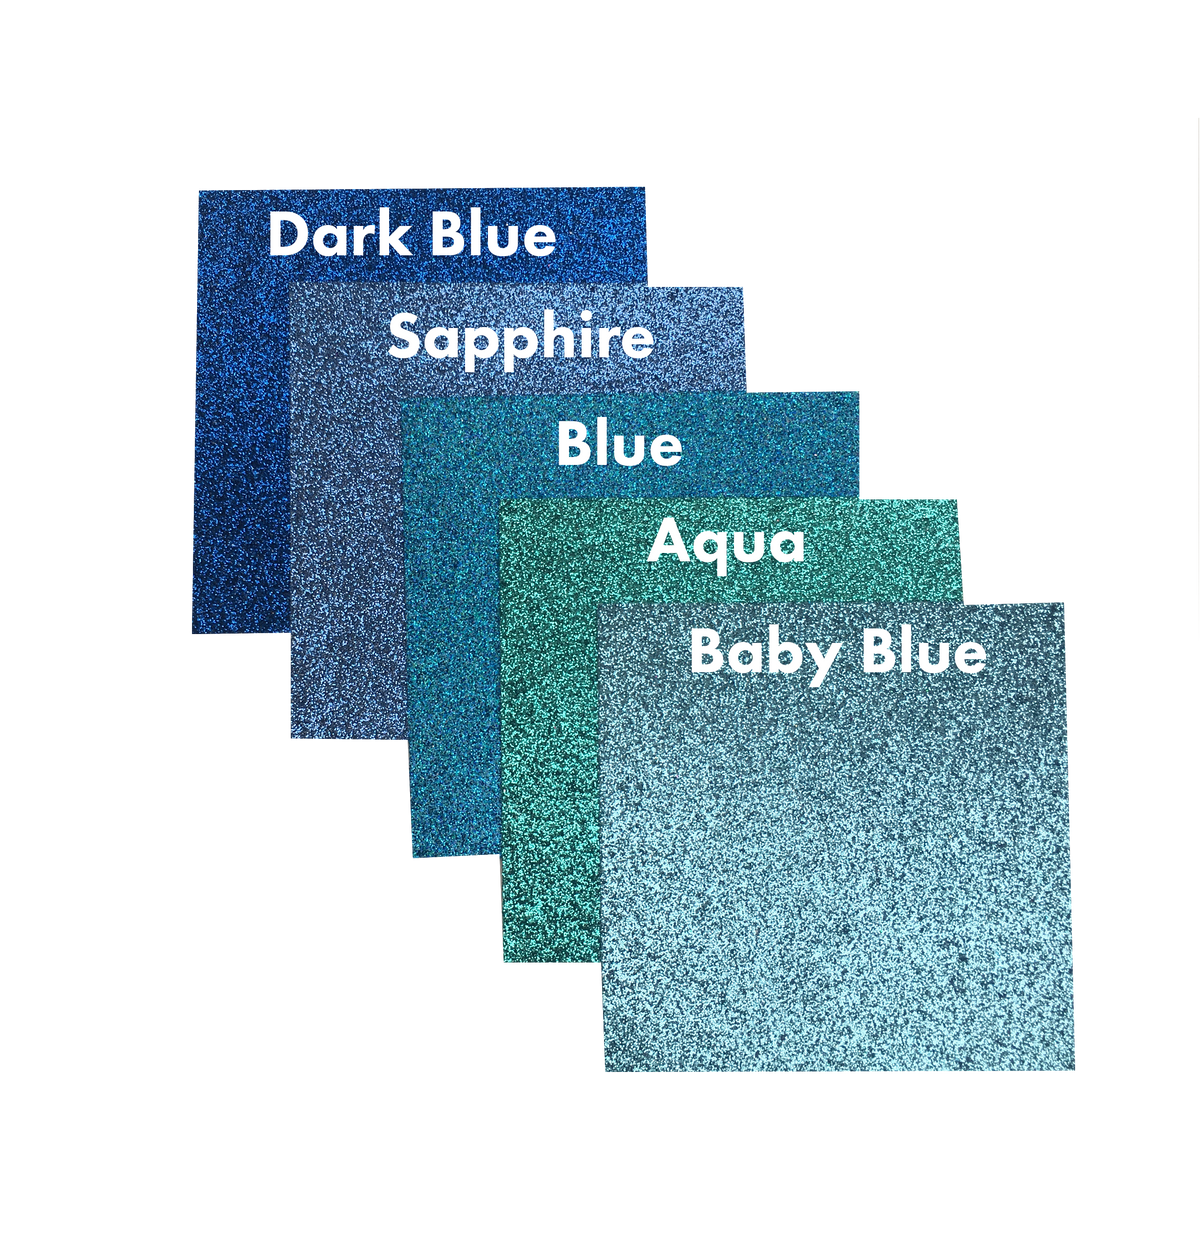 Glitter Cardstock - Baby Blue 5pk - 10pk - 20pk